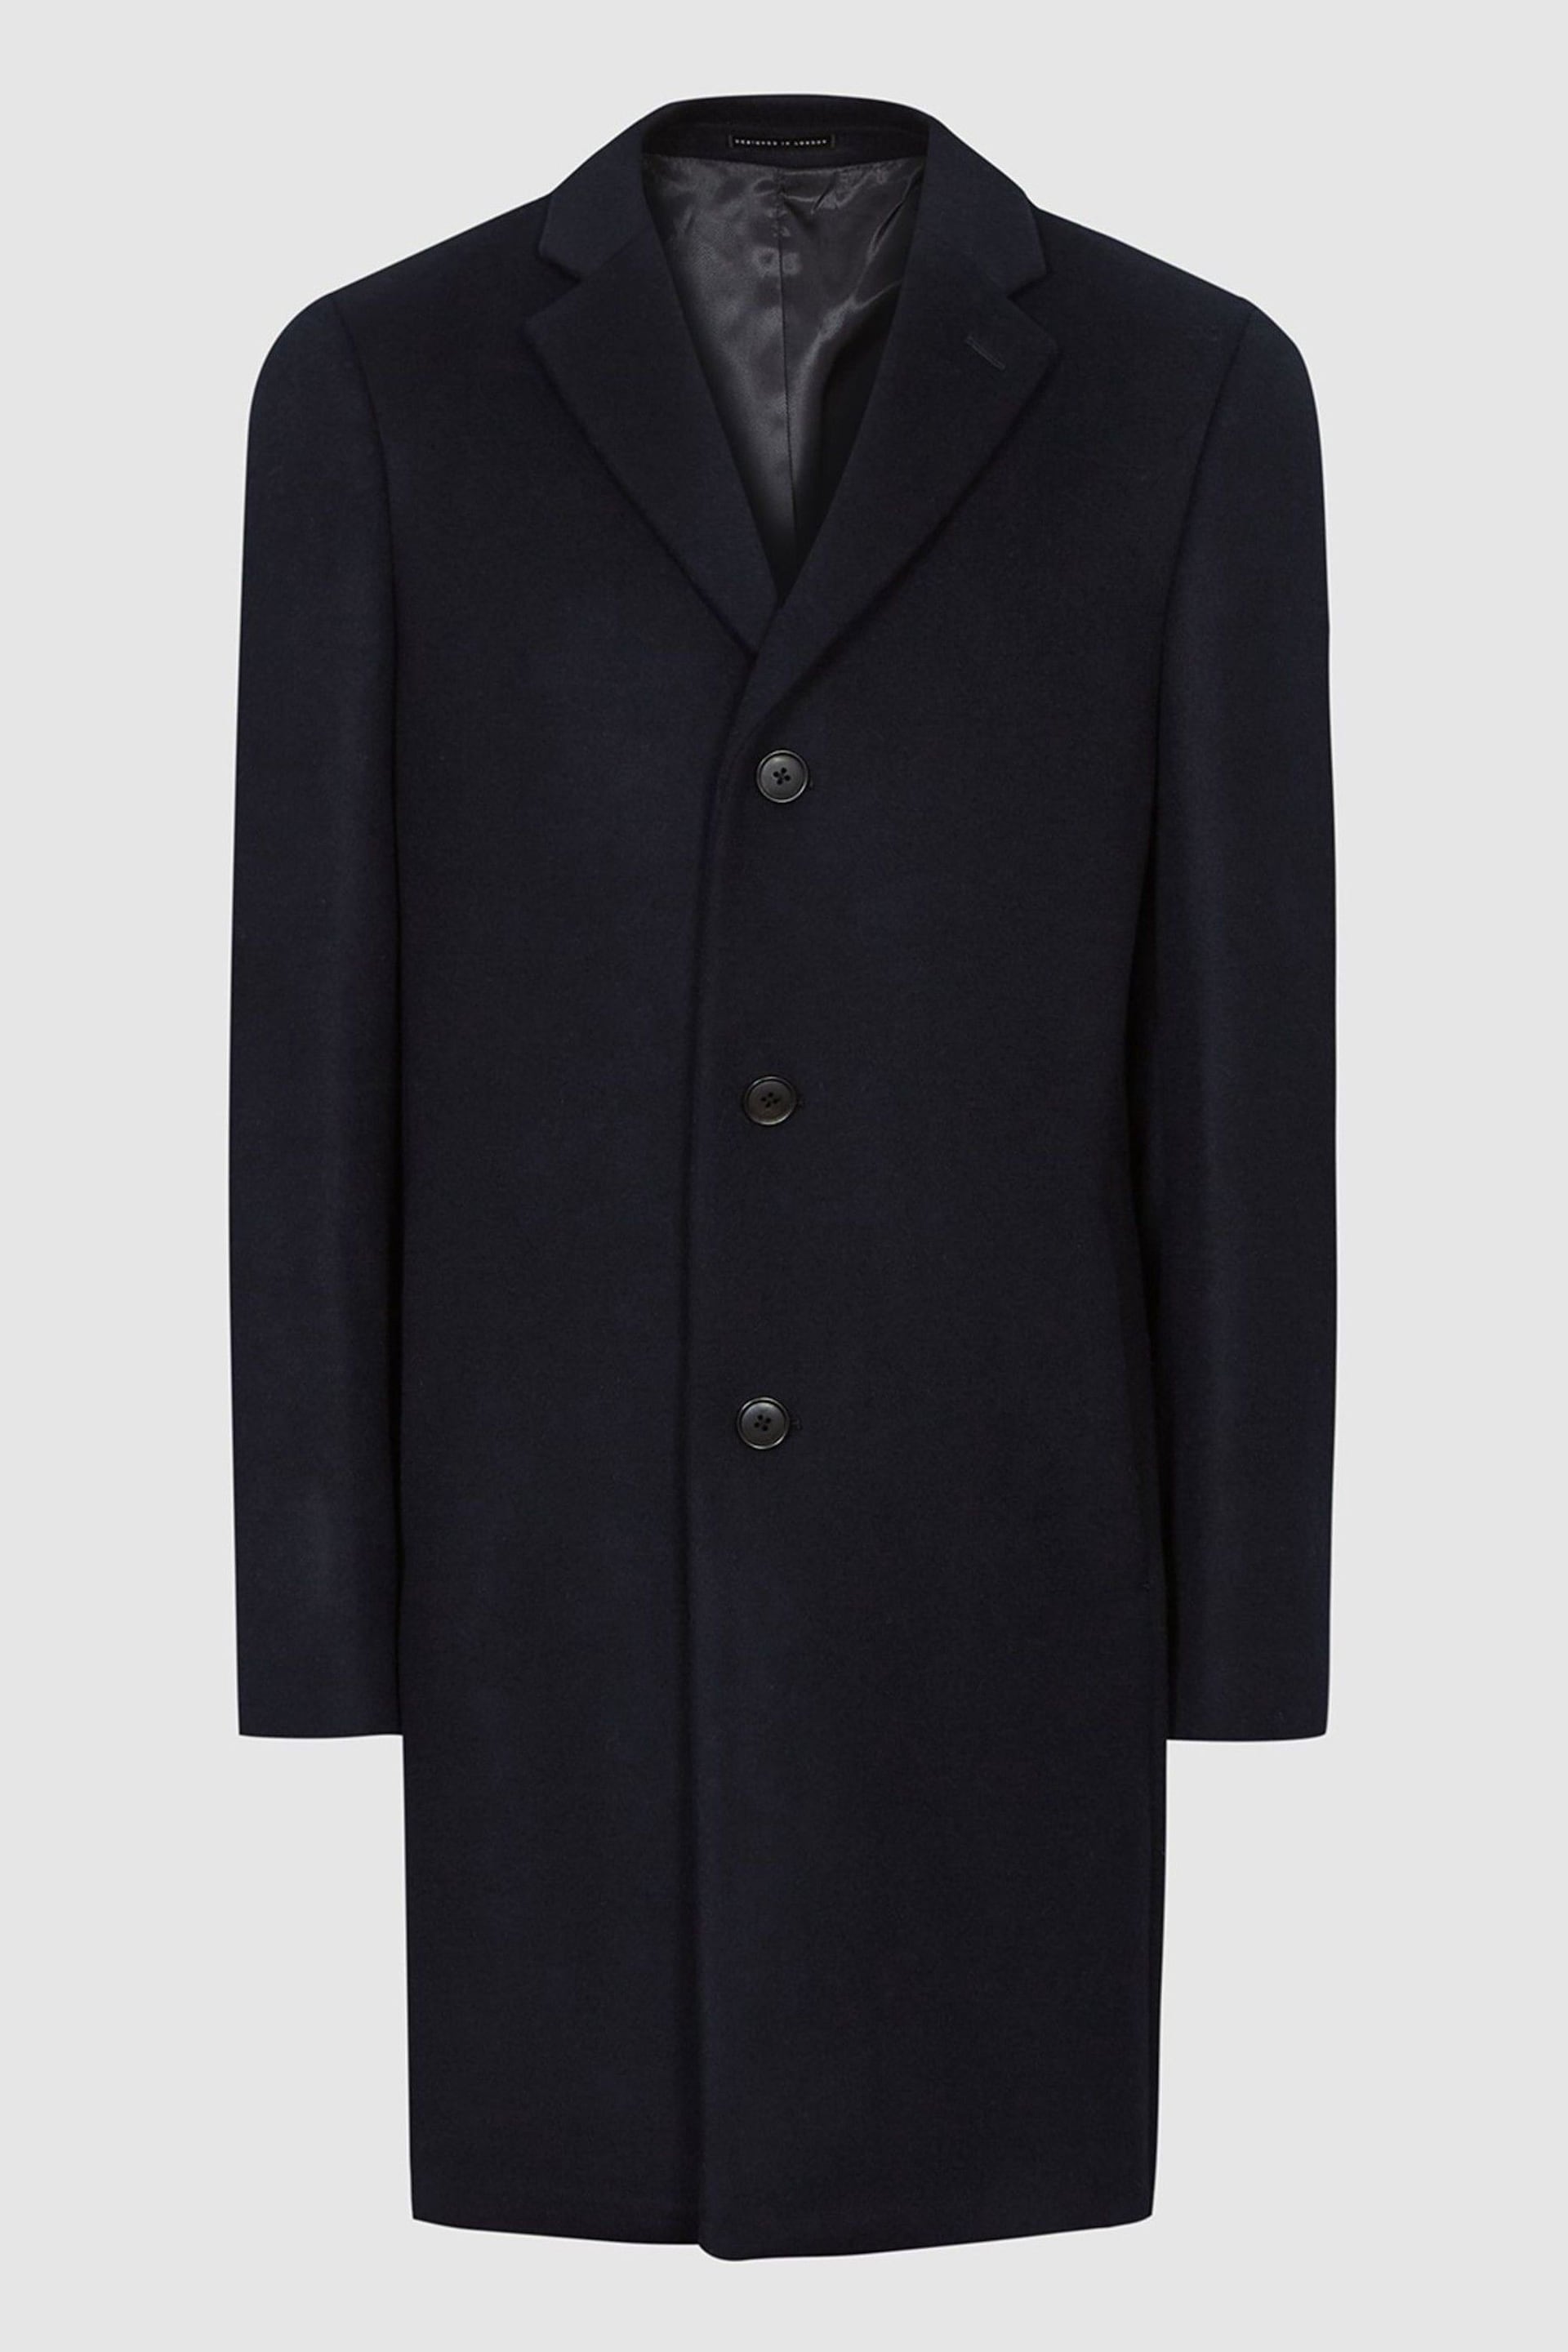 Reiss Blue Gable Wool Blend Epsom Overcoat - Image 2 of 6